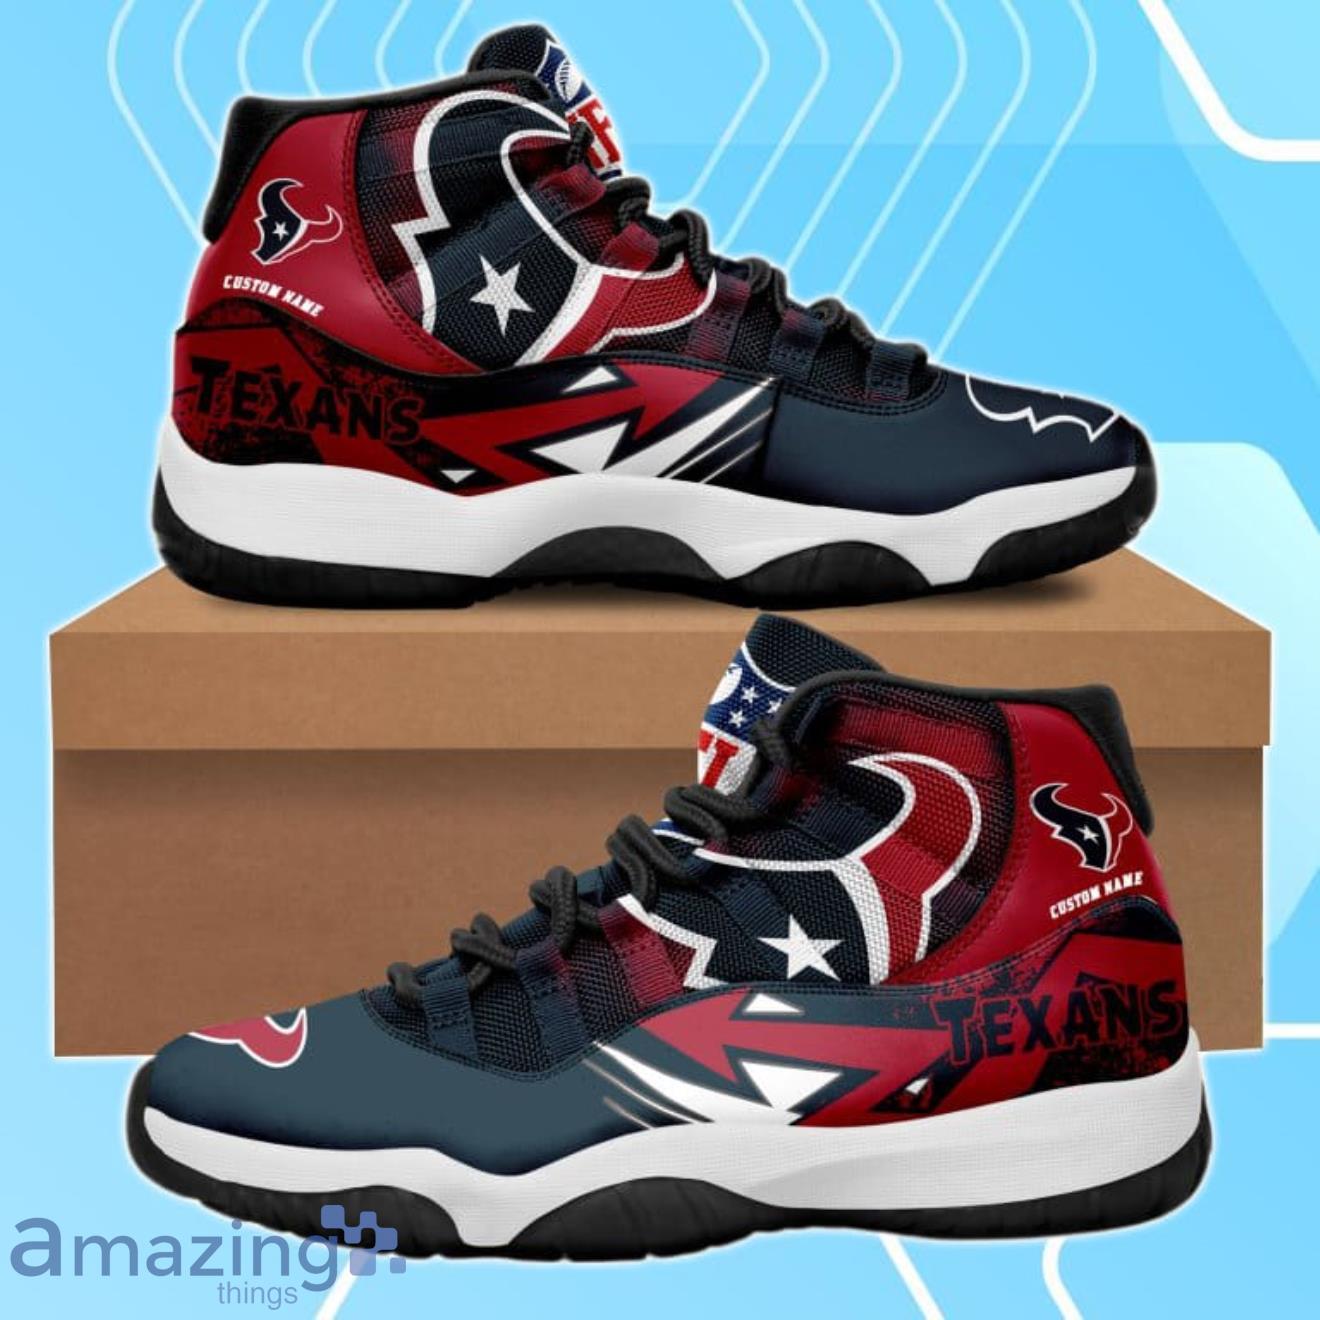 Custom Name Texas Longhorns Air Jordan 13 Sneaker Shoes - Banantees